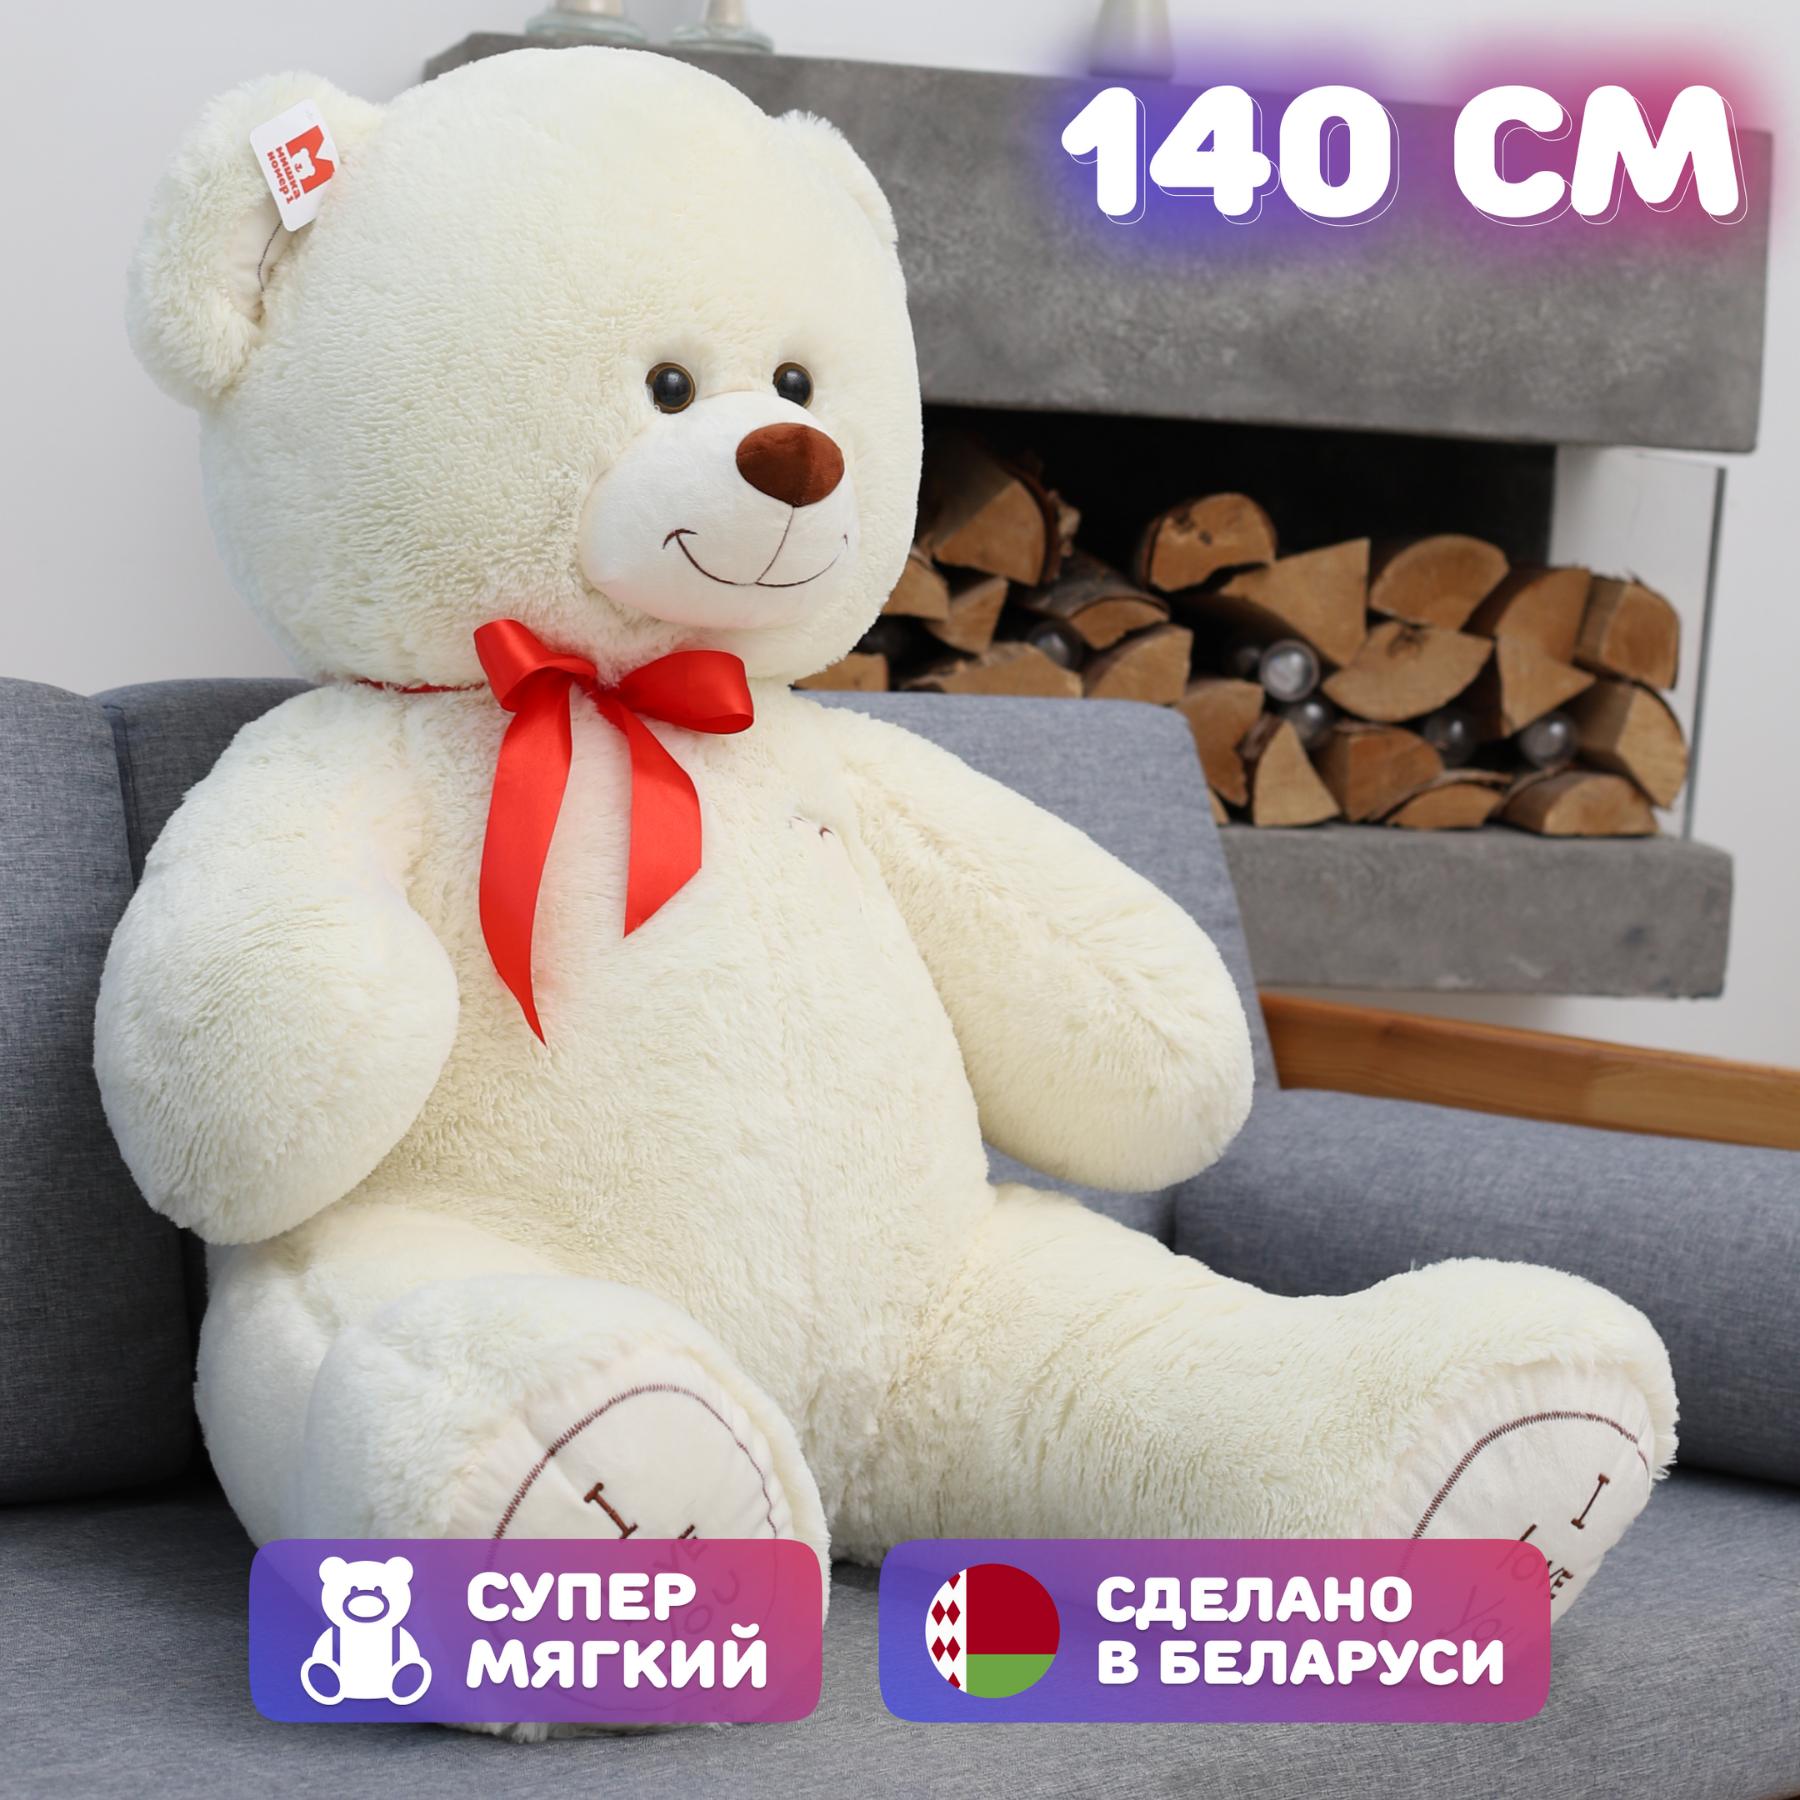 Плюшевый медведь Большой плюшевый мишка Мягкая игрушка ОР - 140 см Молочный